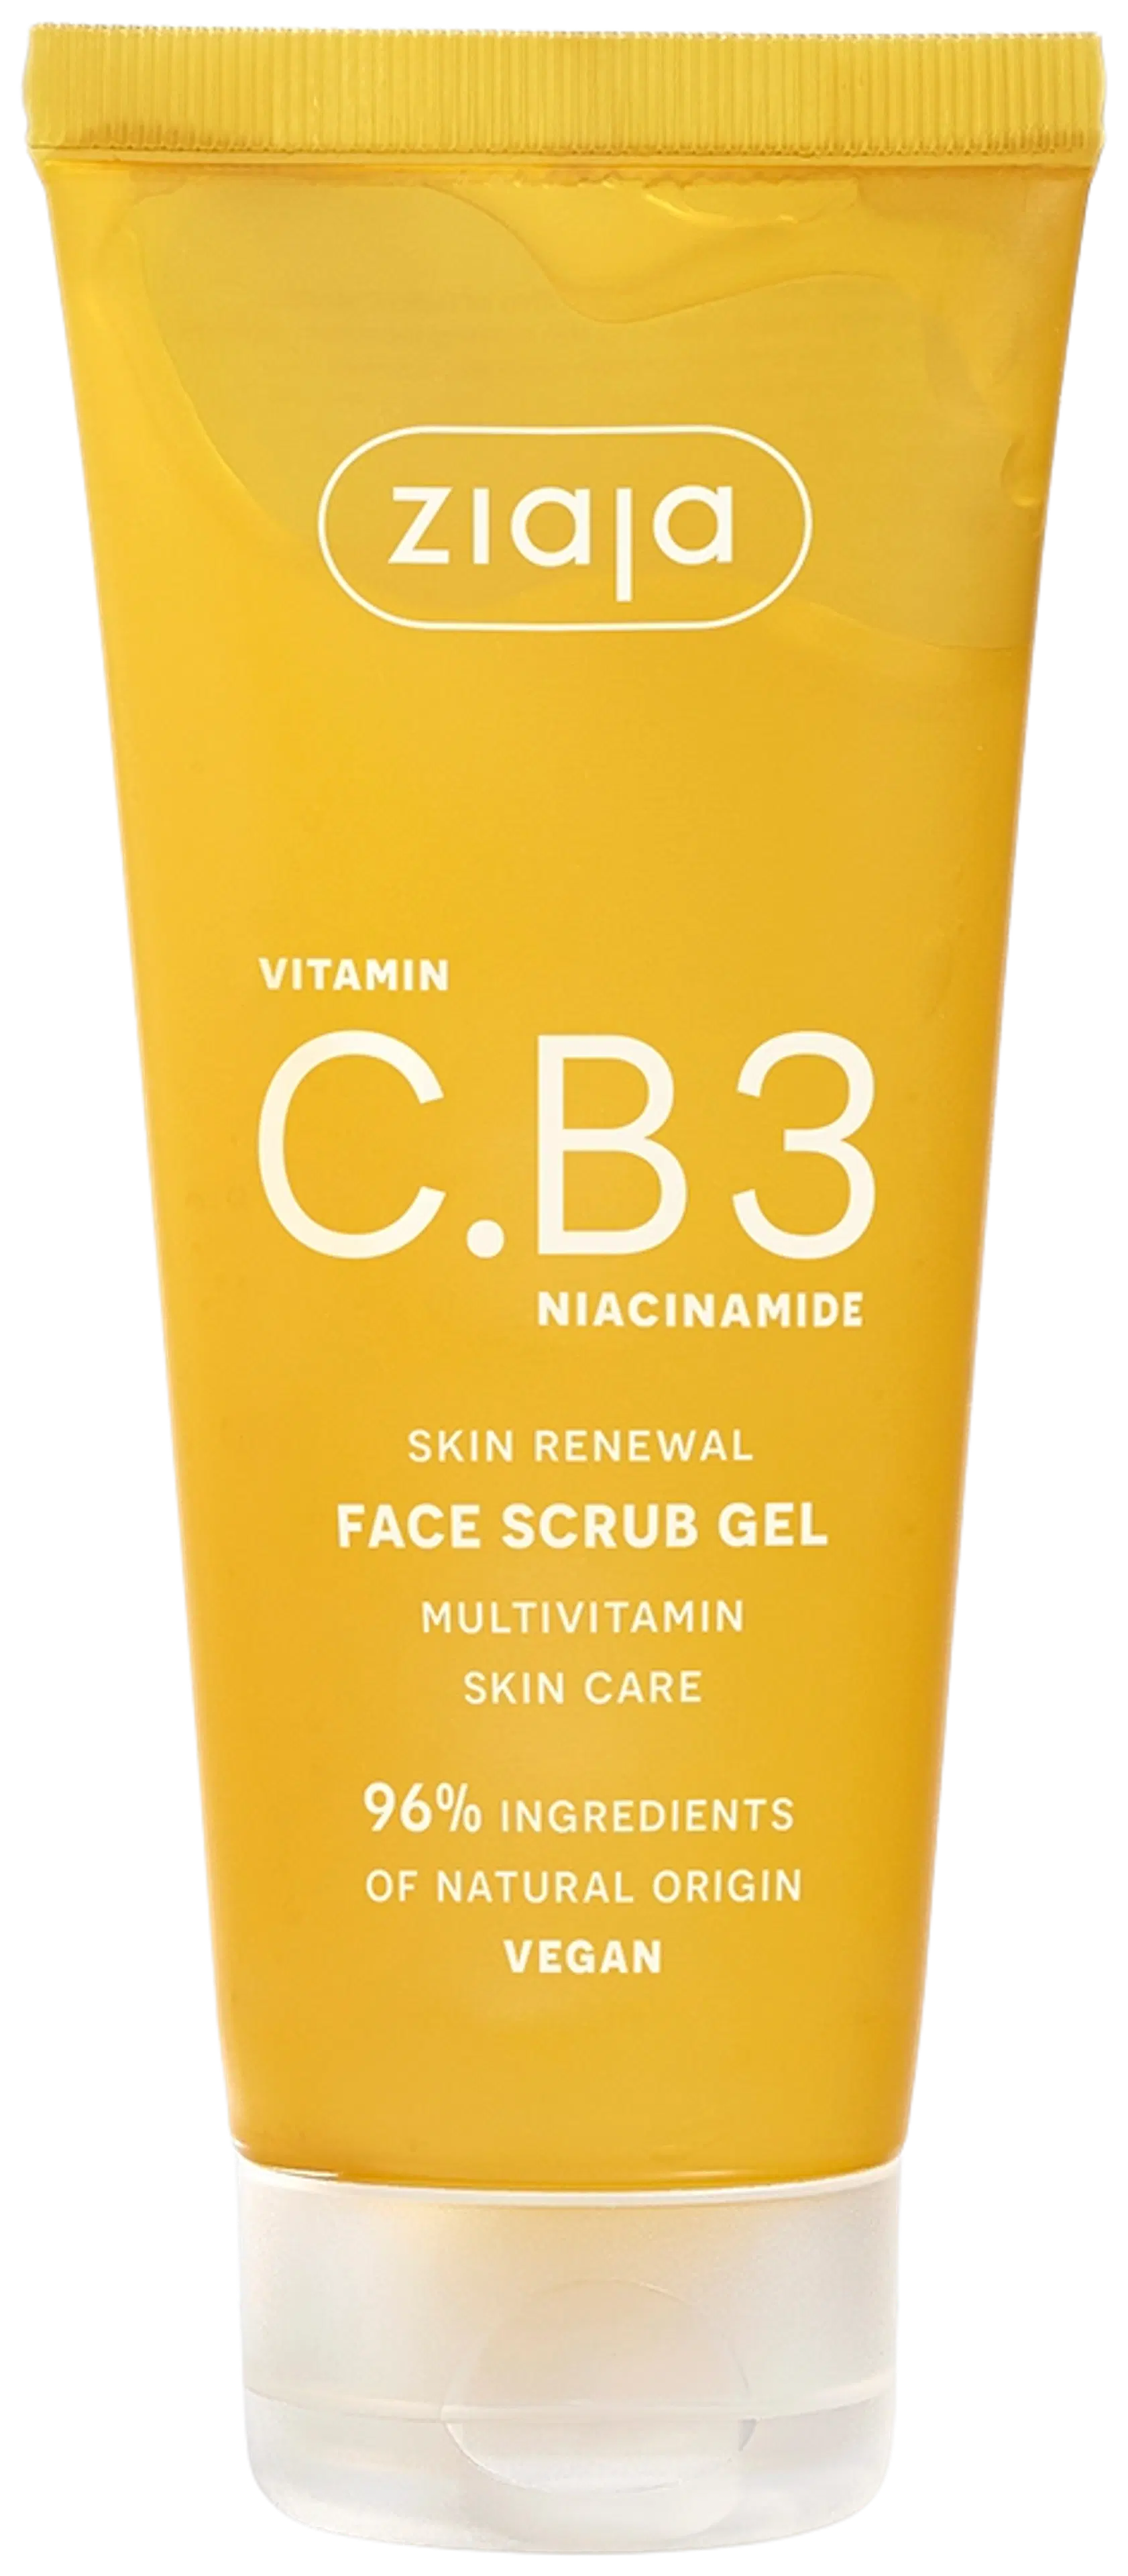 Ziaja C.B3 vitamiini heleyttävä rakeeton kuorinta 100 ml